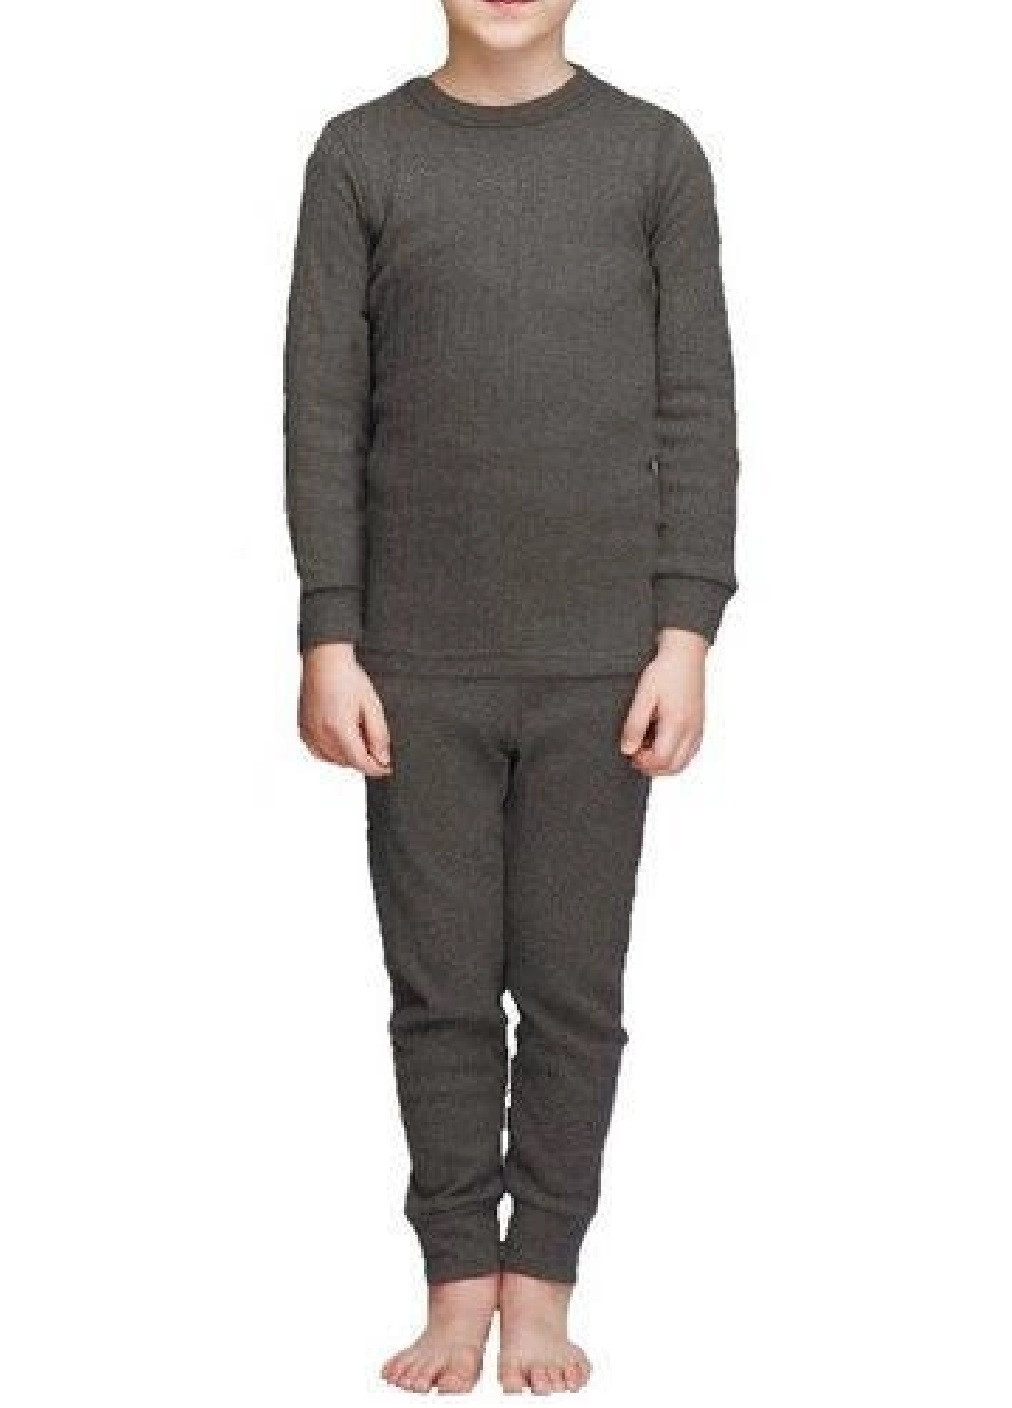 Комплект набор детское термобелье термоодежда костюм кофта кальсоны для холодной погоды рост 116 (475378-Prob) Серый Unbranded (266693827)